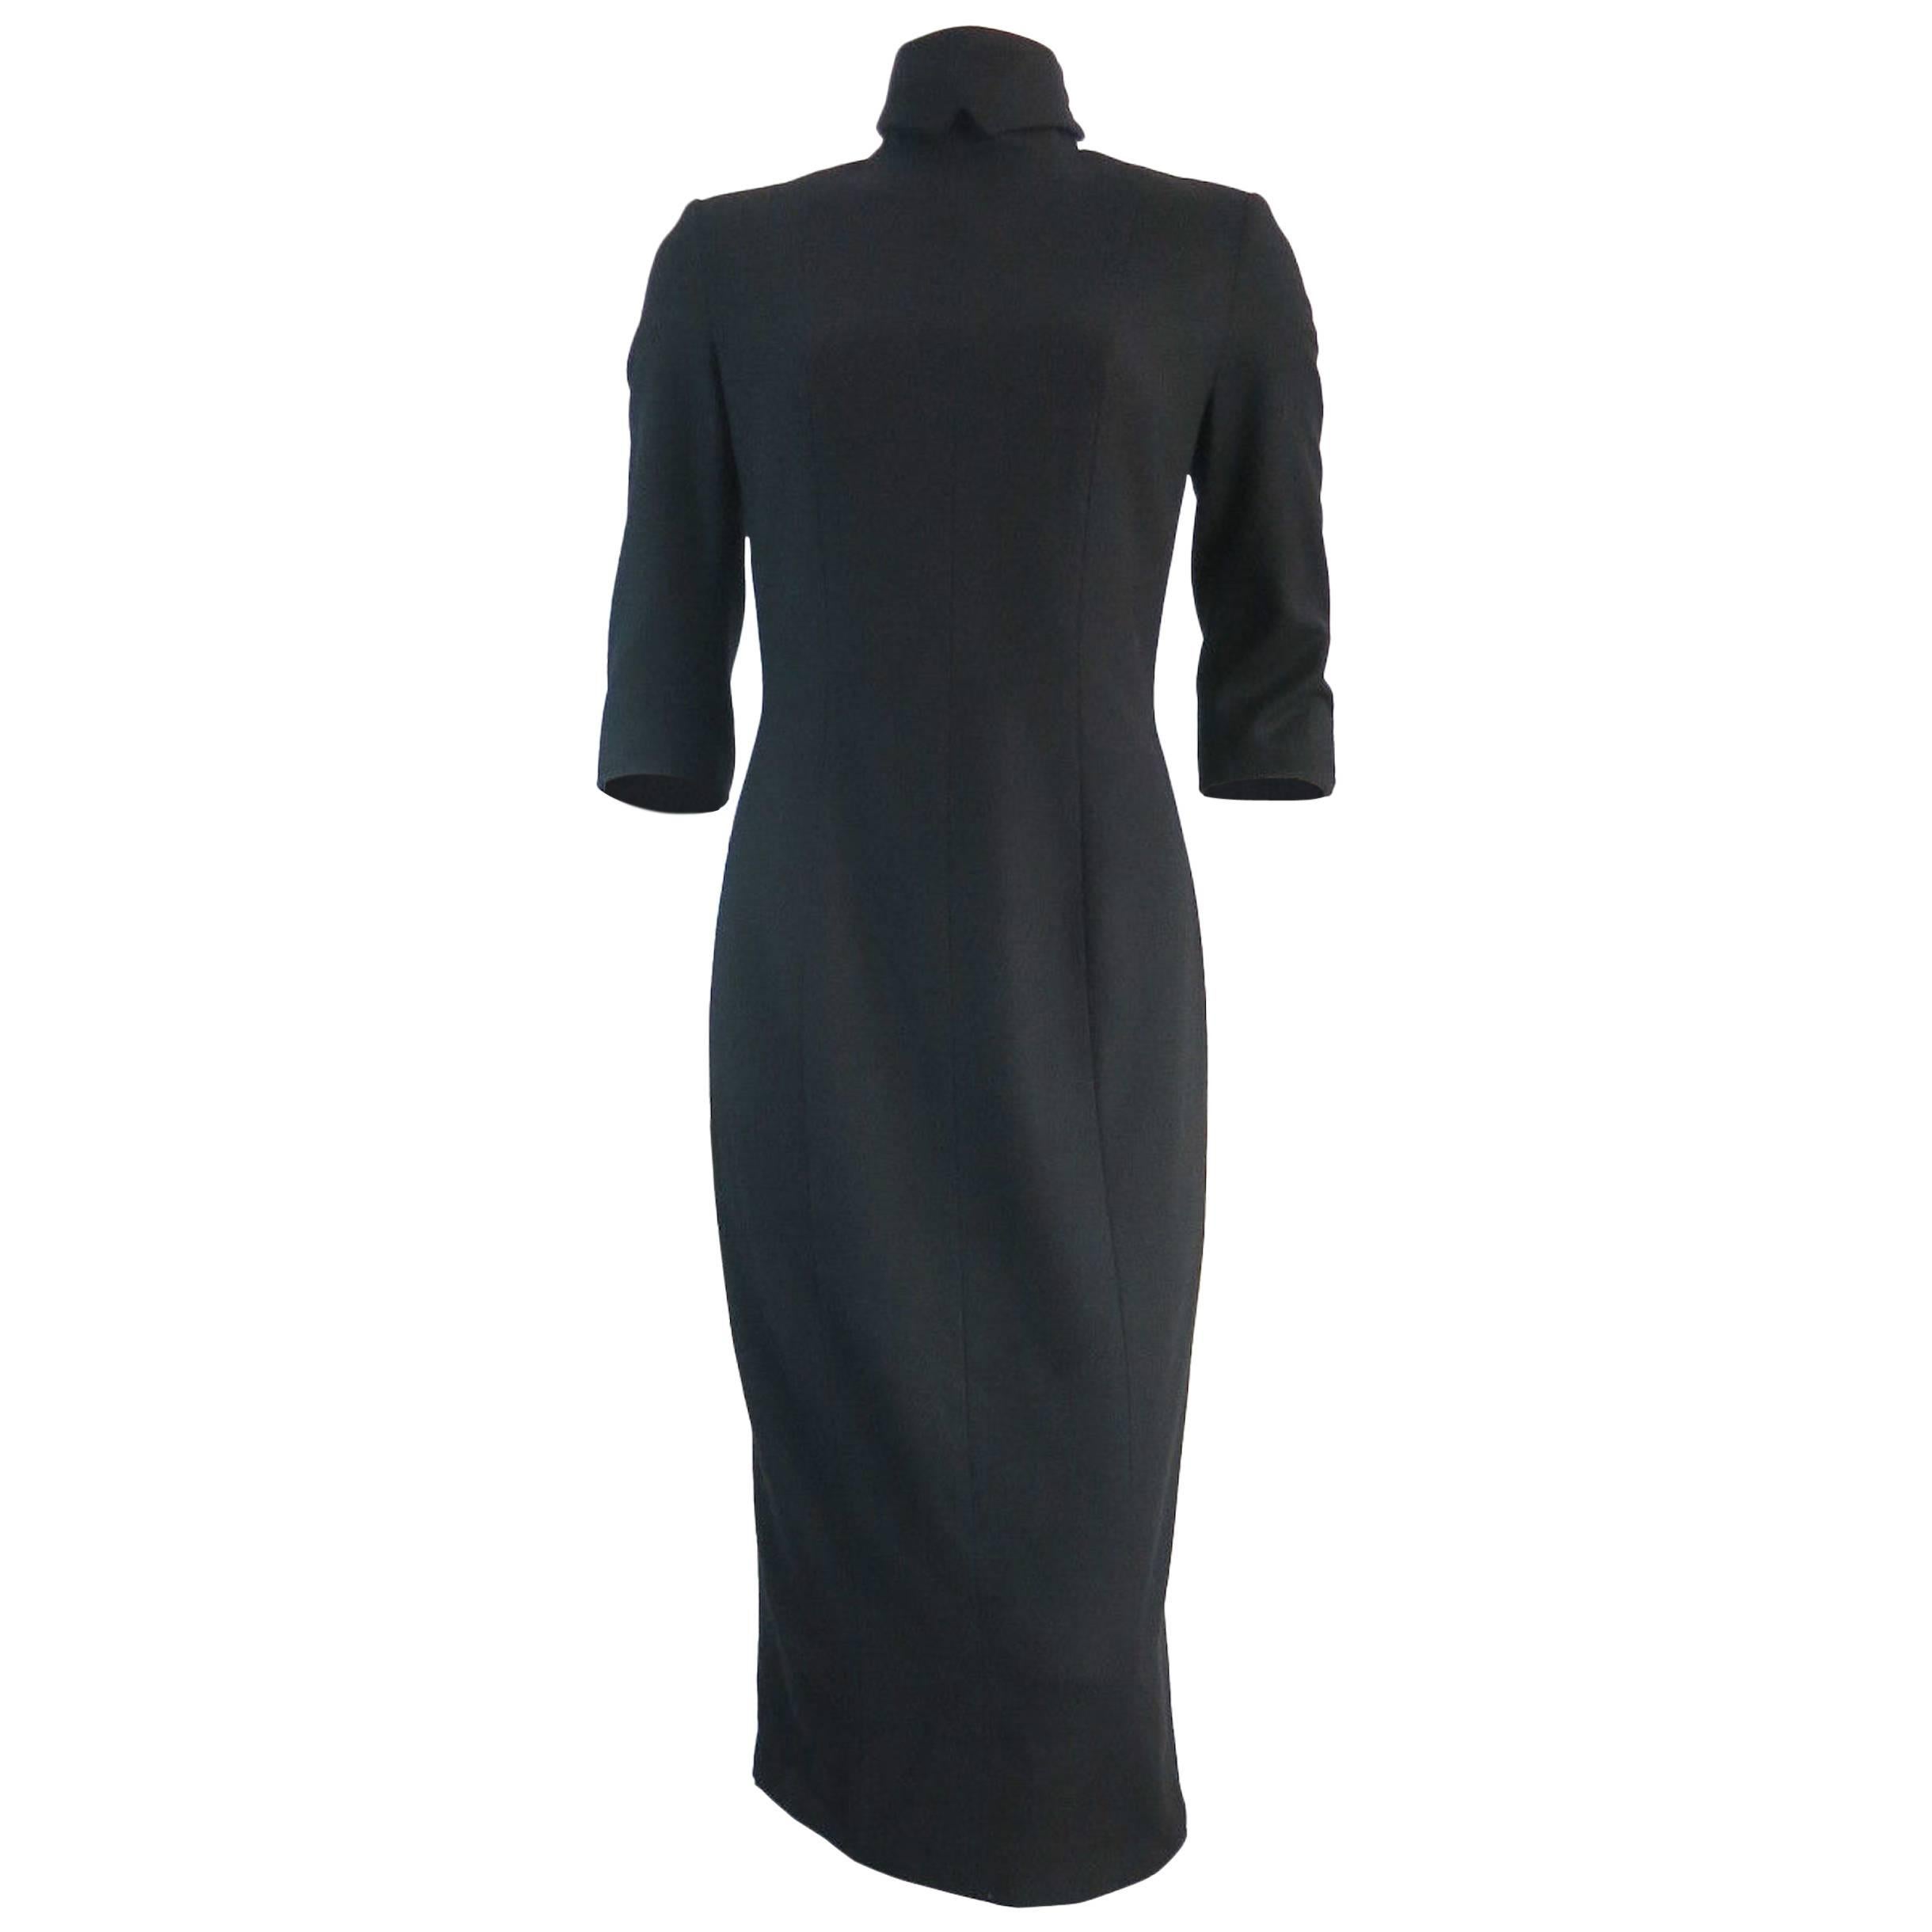 OLIVIER THEYSKENS Black wool dress For Sale